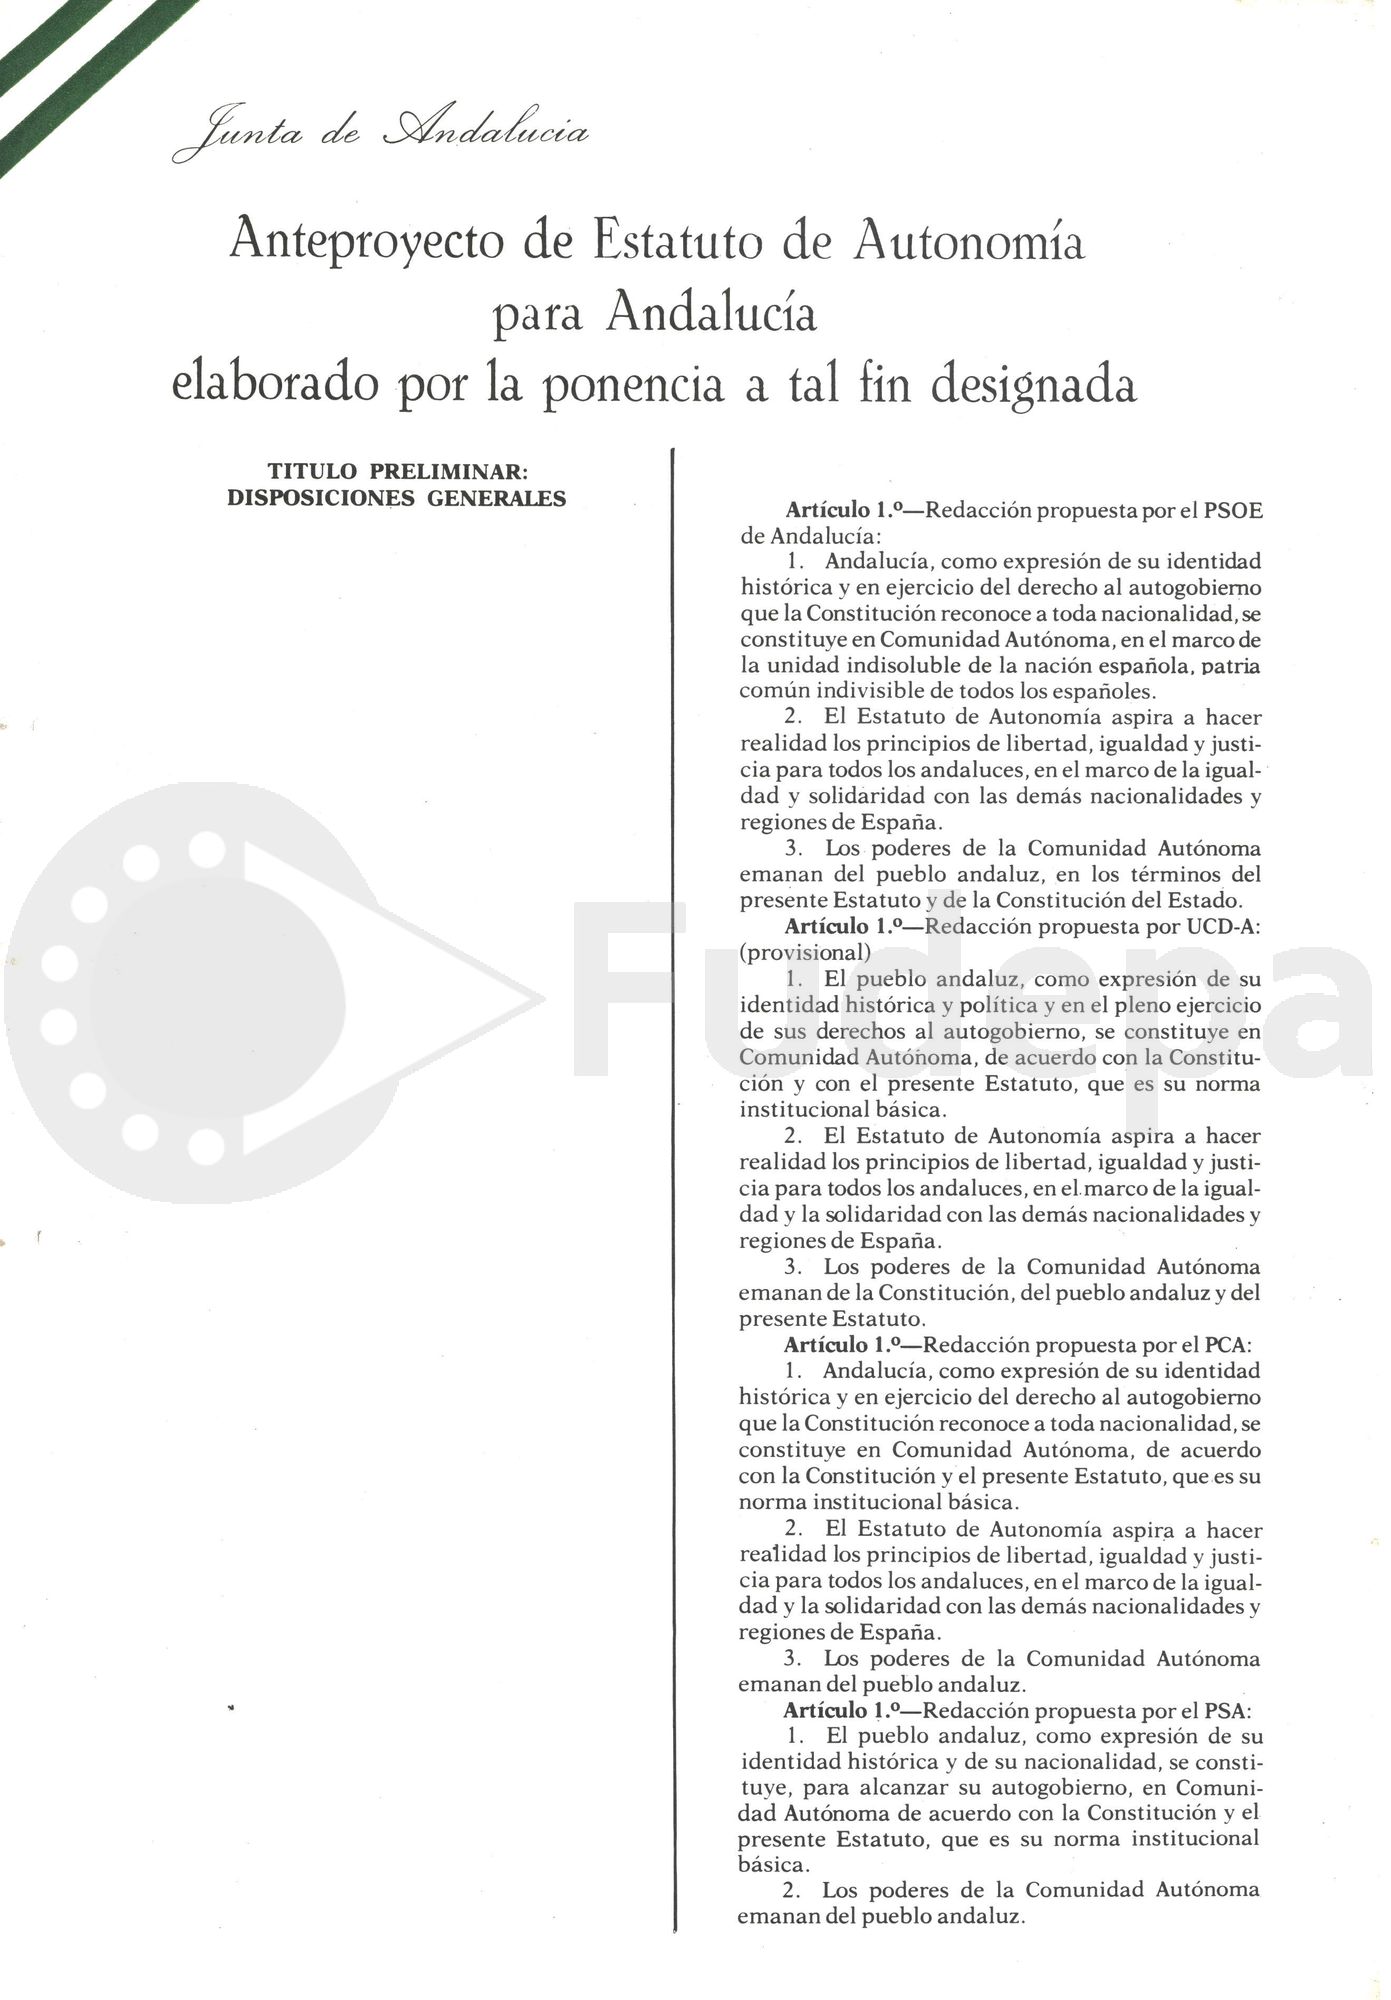 Alcanzado el desbloqueo autonómico, el 4 de diciembre de 1980 se constituyó la ponencia definitiva de redacción del Anteproyecto de Estatuto, conocido como "Estatuto de Carmona" por reunirse los ponentes en el parador de dicha localidad.
(FUDEPA_AHUGTA: donado por Manuel del Valle Arévalo)